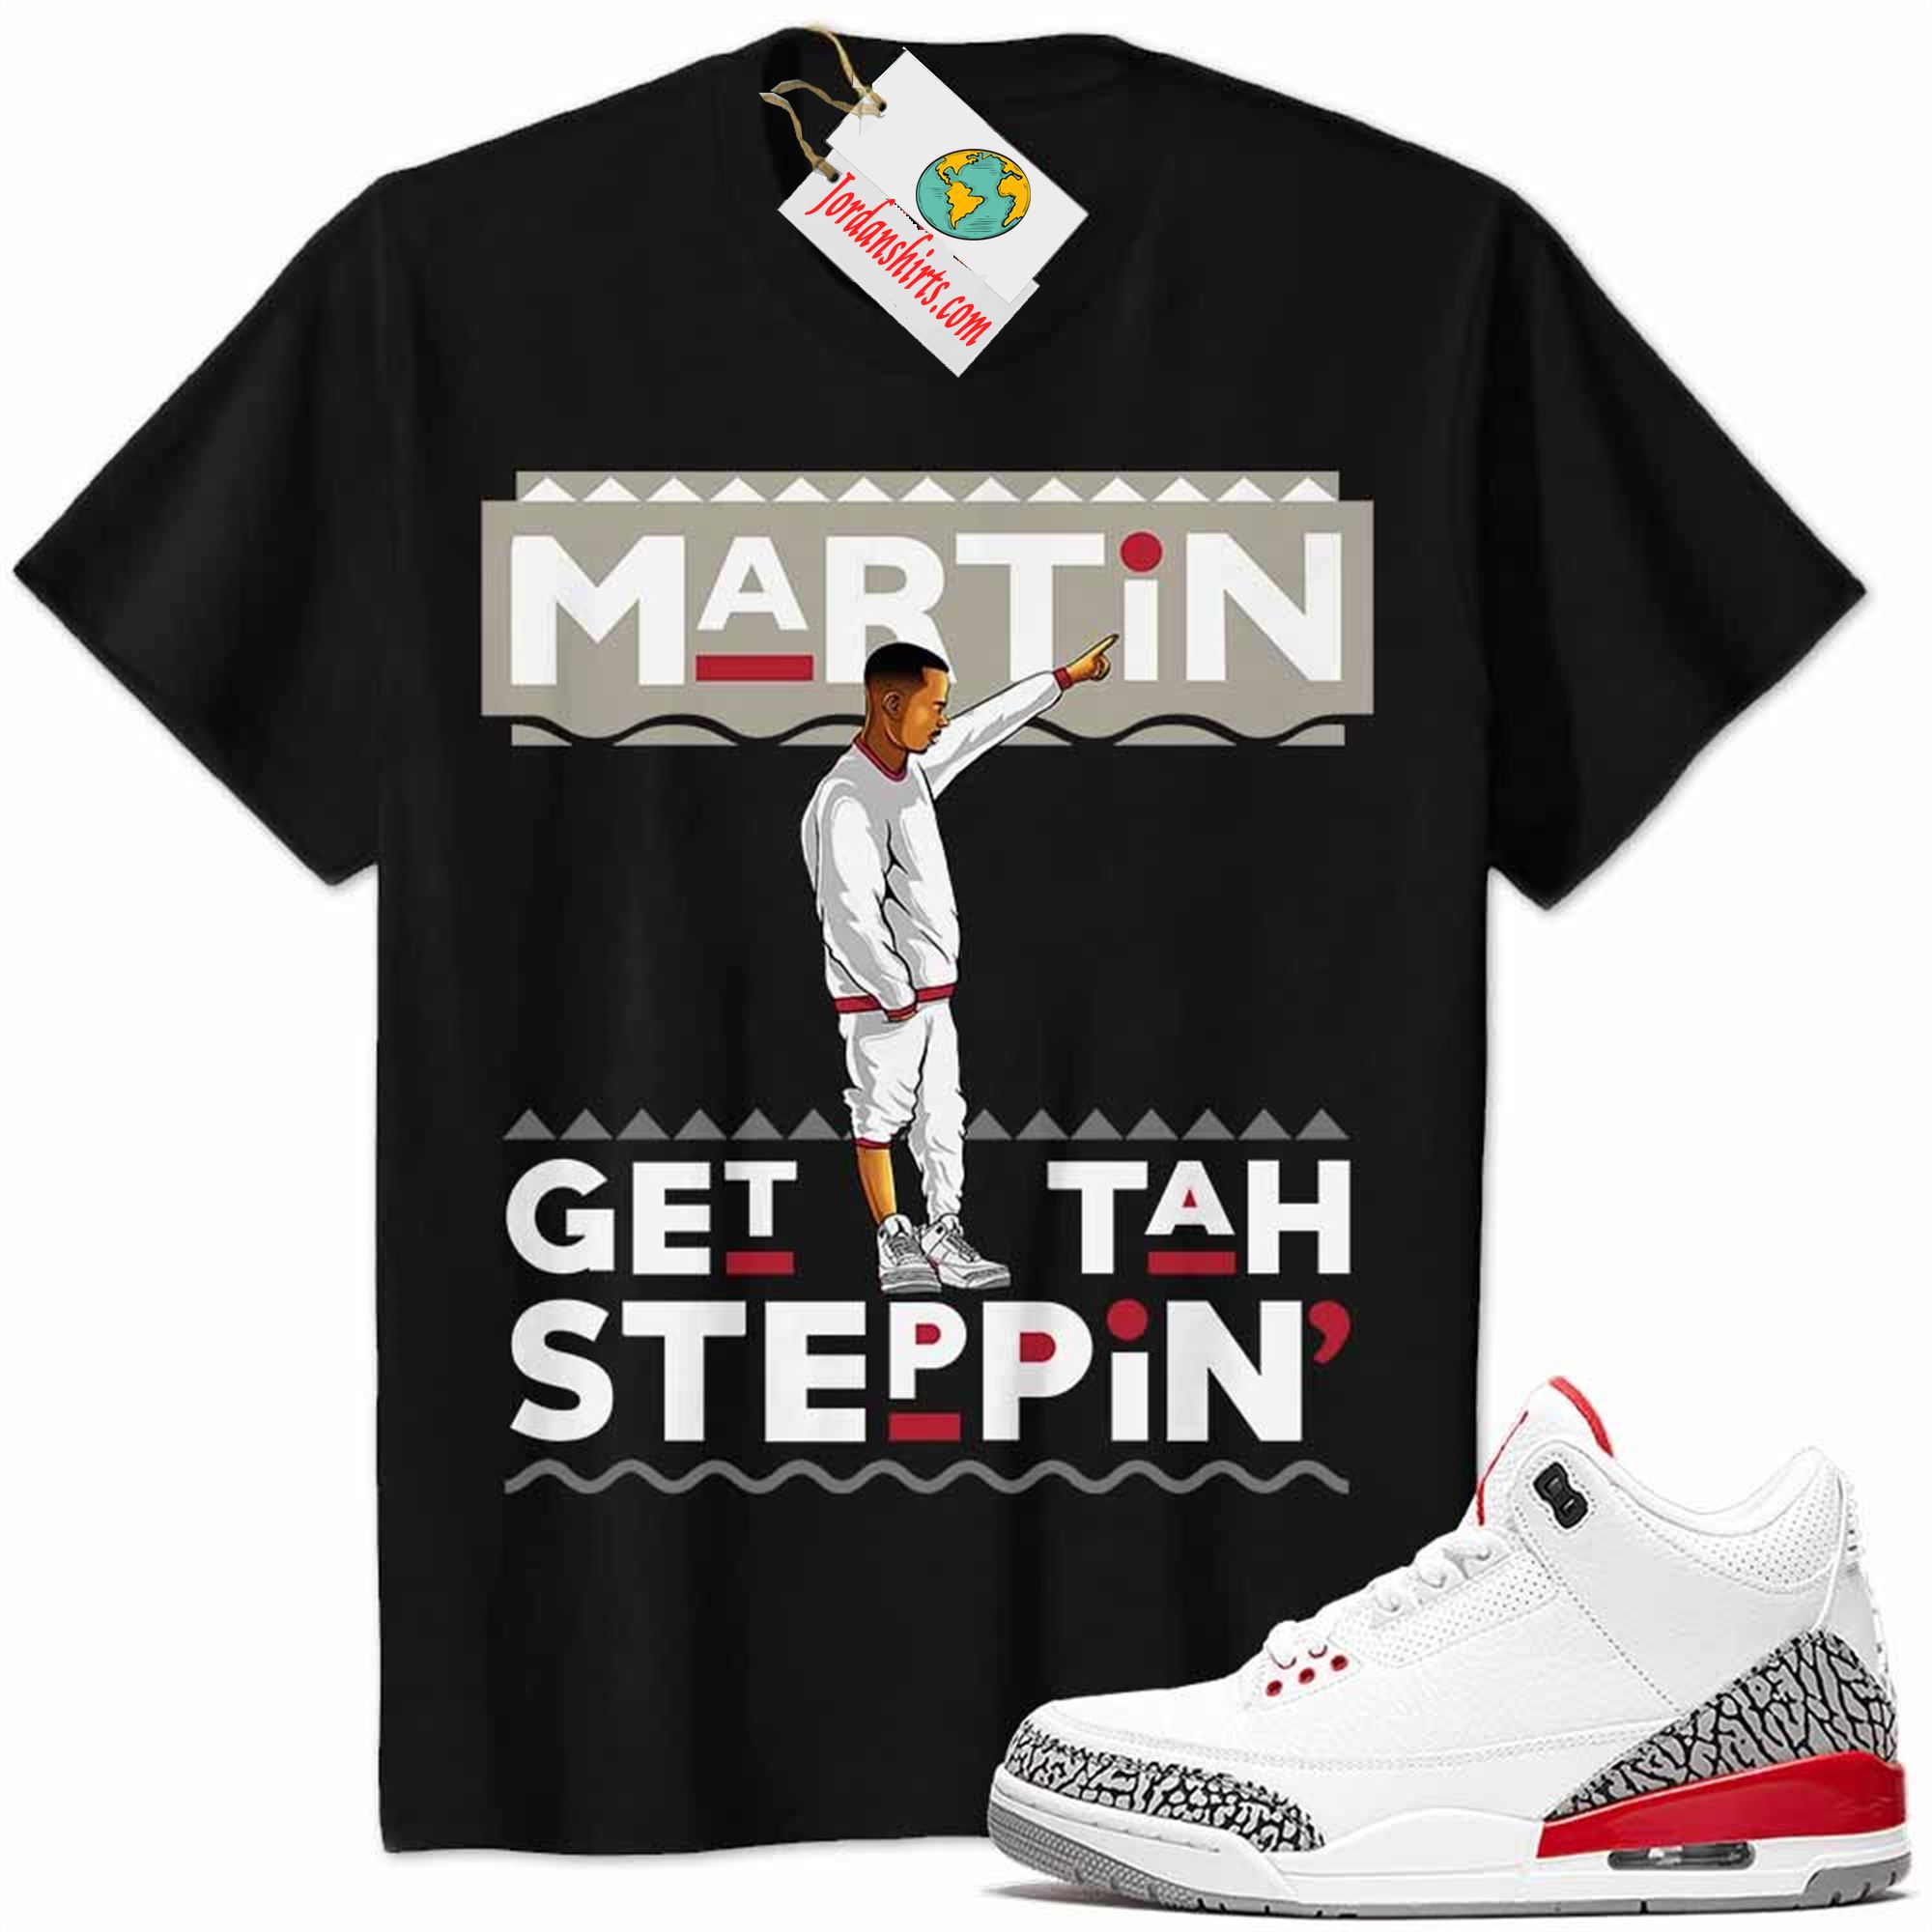 Jordan 3 Shirt, Jordan 3 Katrina Shirt Martin Get Tah Steppin Black Plus Size Up To 5xl